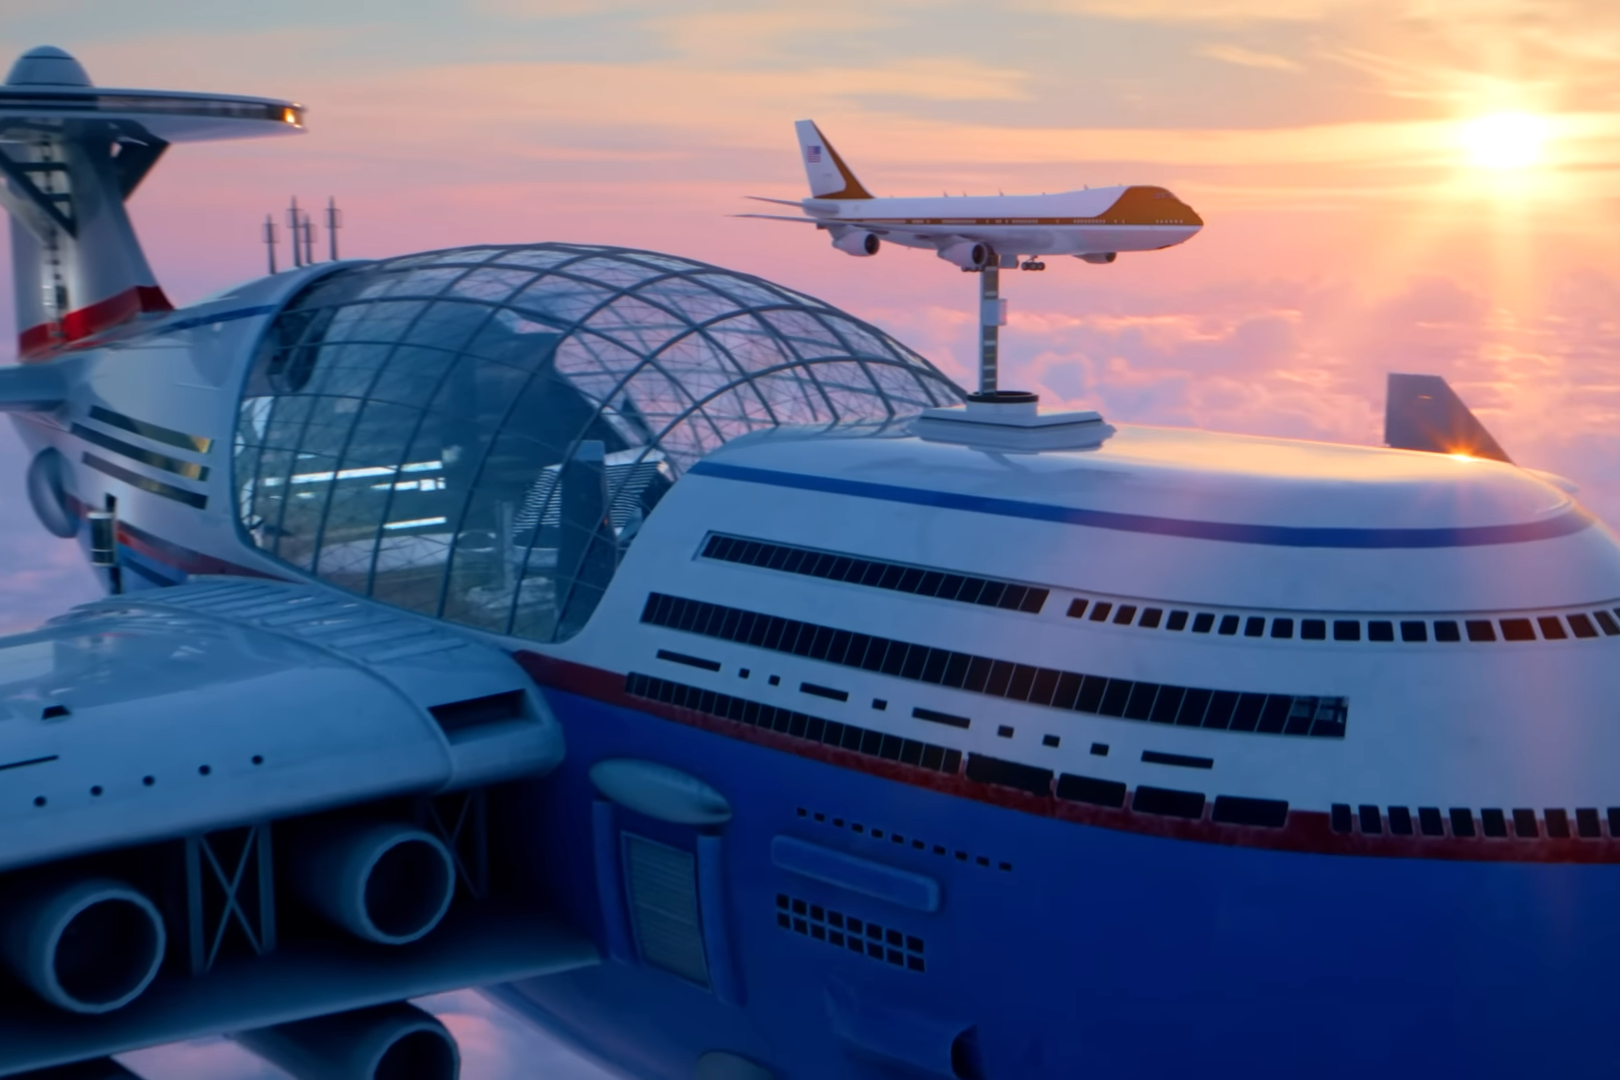 Sky Cruise és el vaixell volador nuclear dissenyat per Hashem Al-Ghaili